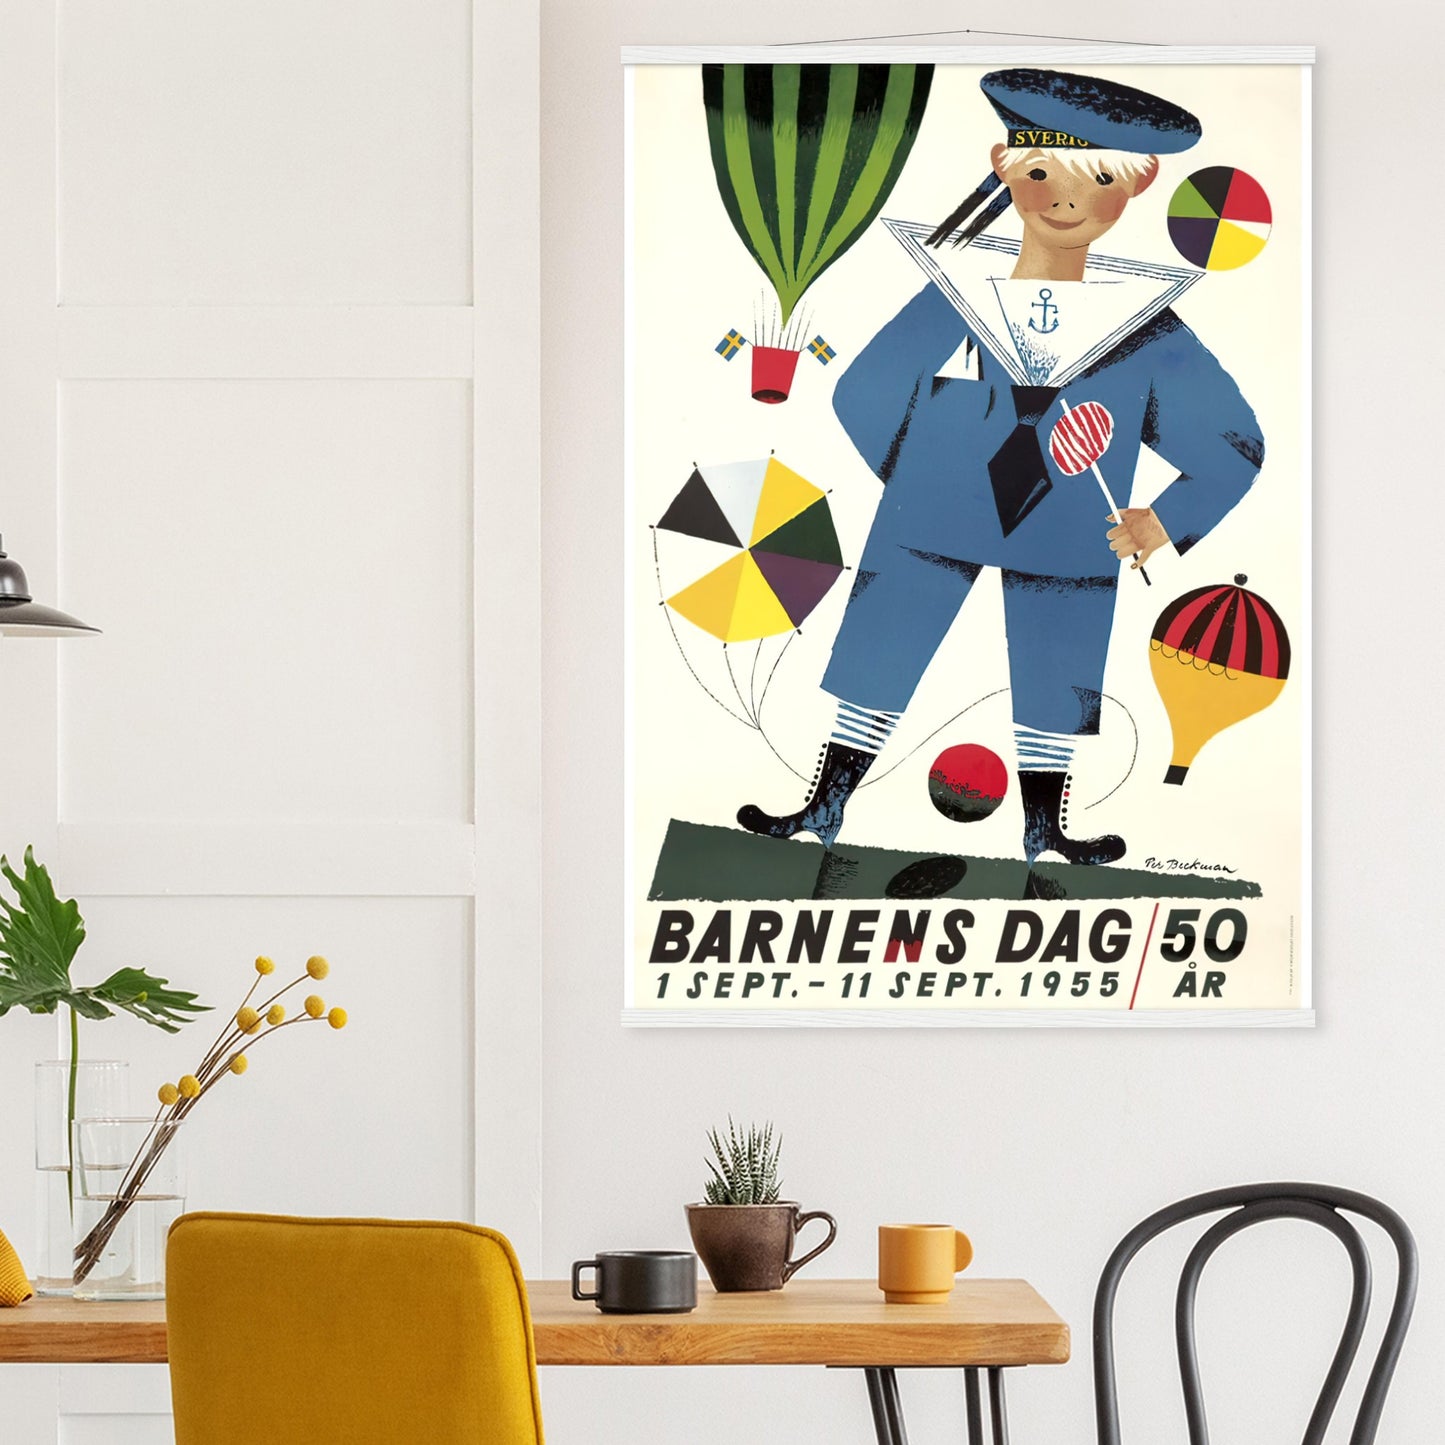 Barnens dag Vintage Poster Reprint on Premium Matte Paper - Posterify